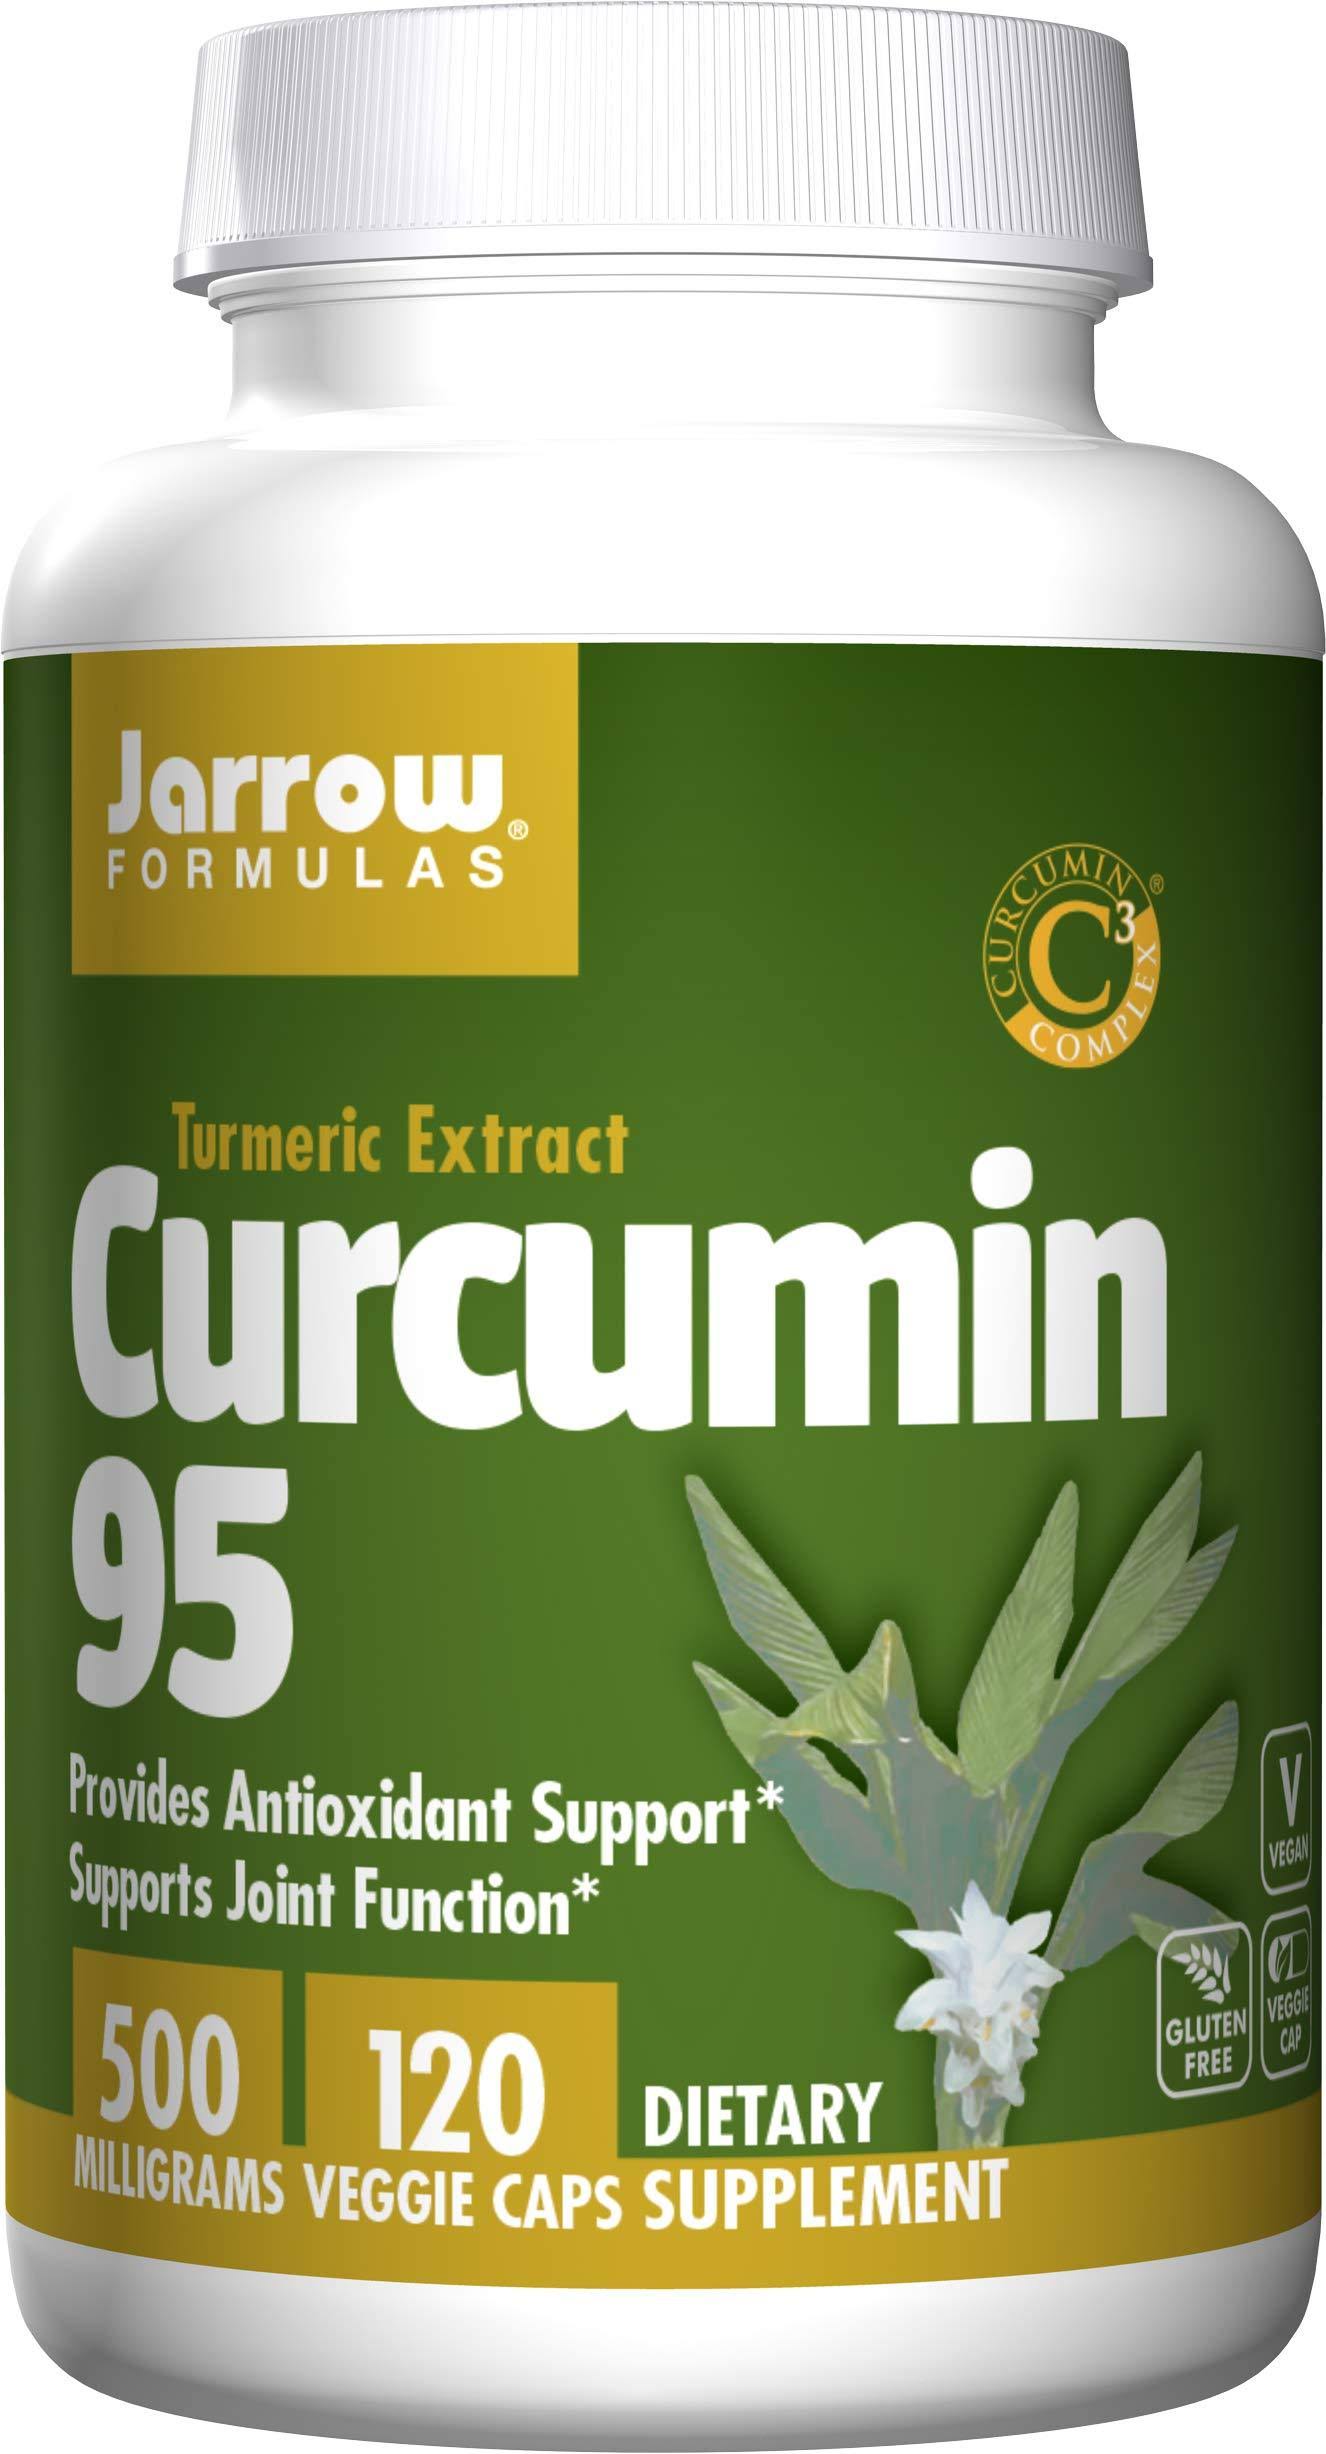 Jarrow Formulas Curcumin 95 - 120 Capsules, 500mg